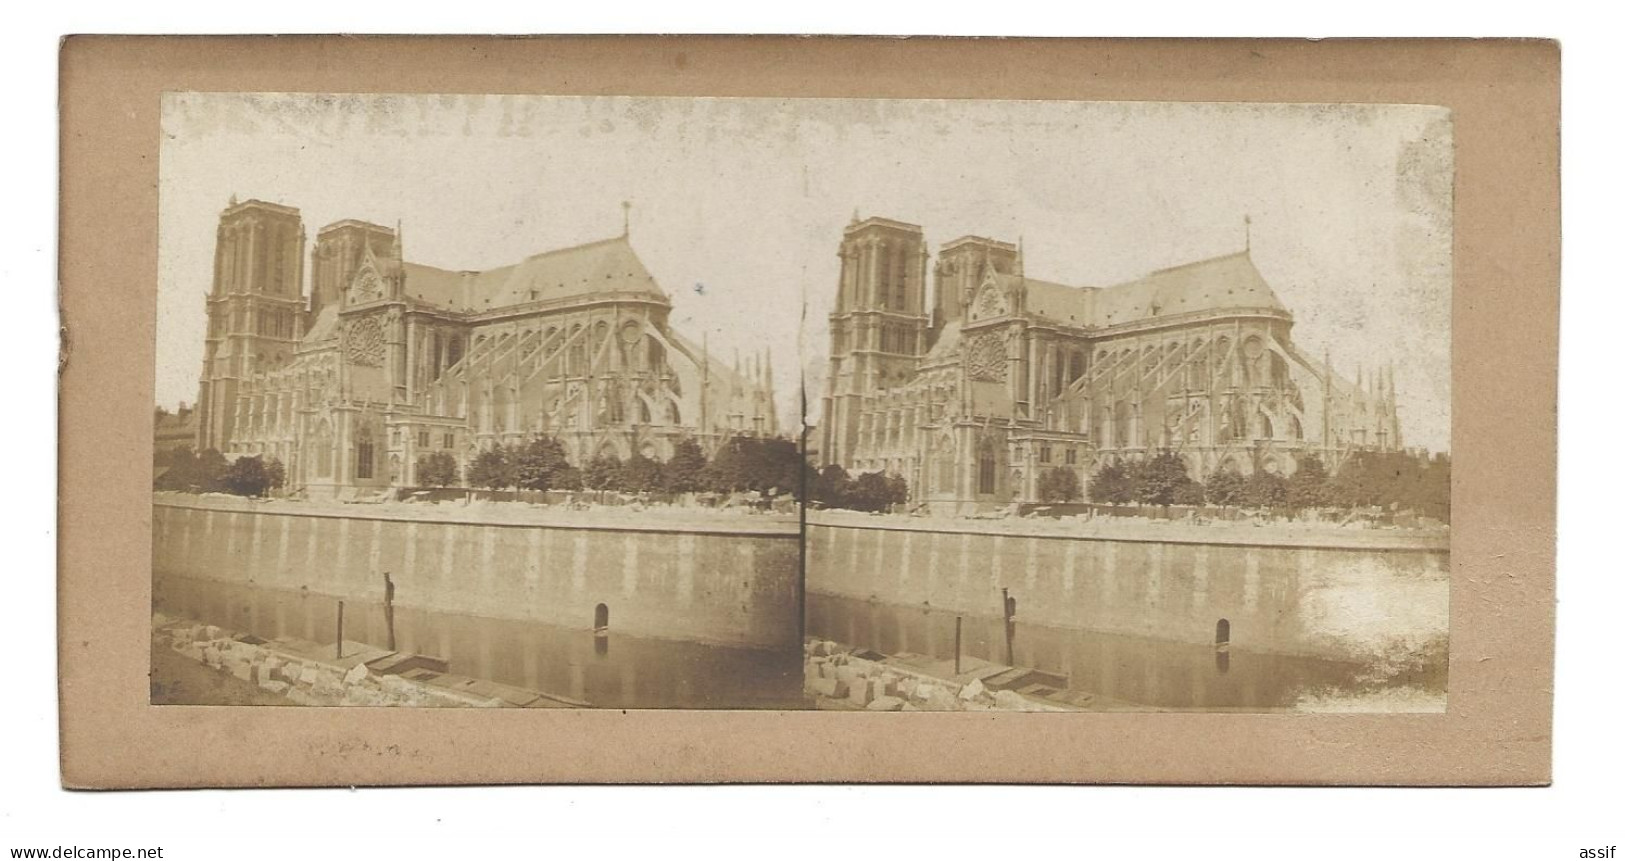 Paris Notre Dame ( Sans Sa Flèche - Avant 1860 ) Photographie Stéréoscopique - Auteur ? - Photos Stéréoscopiques